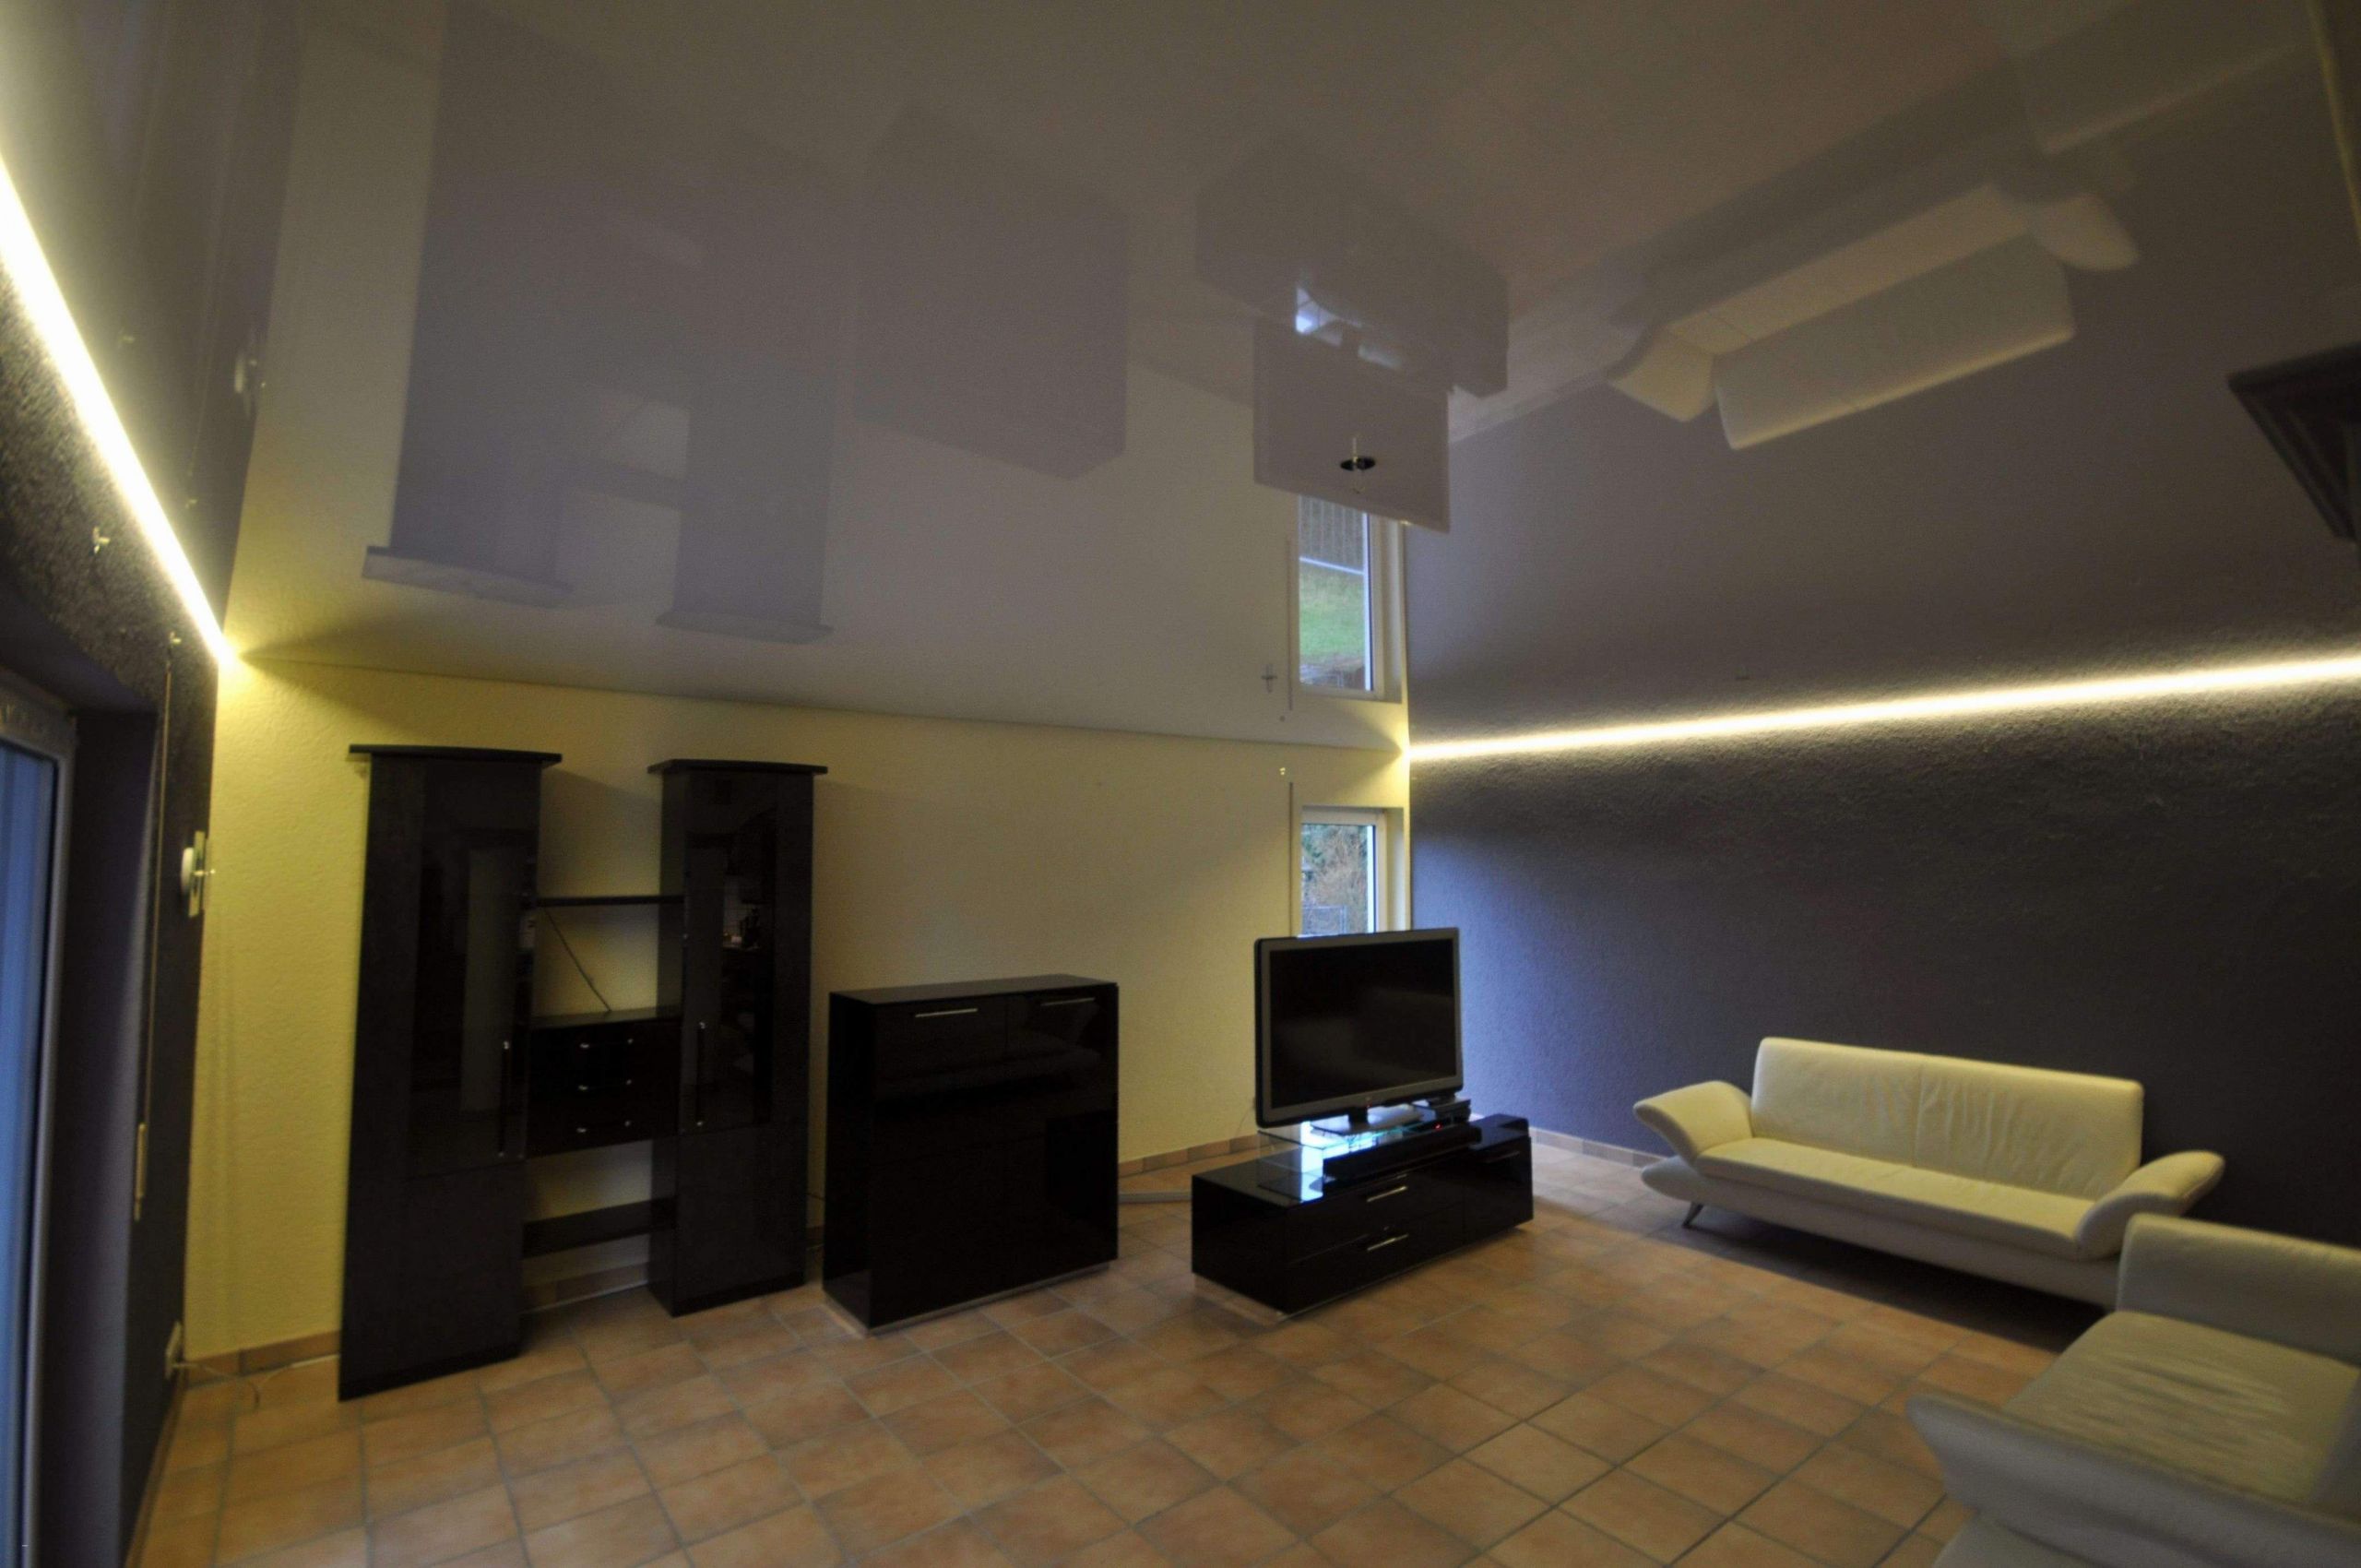 leuchten wohnzimmer elegant wohnzimmer licht 0d design ideen von wohnzimmer lampen decke of leuchten wohnzimmer